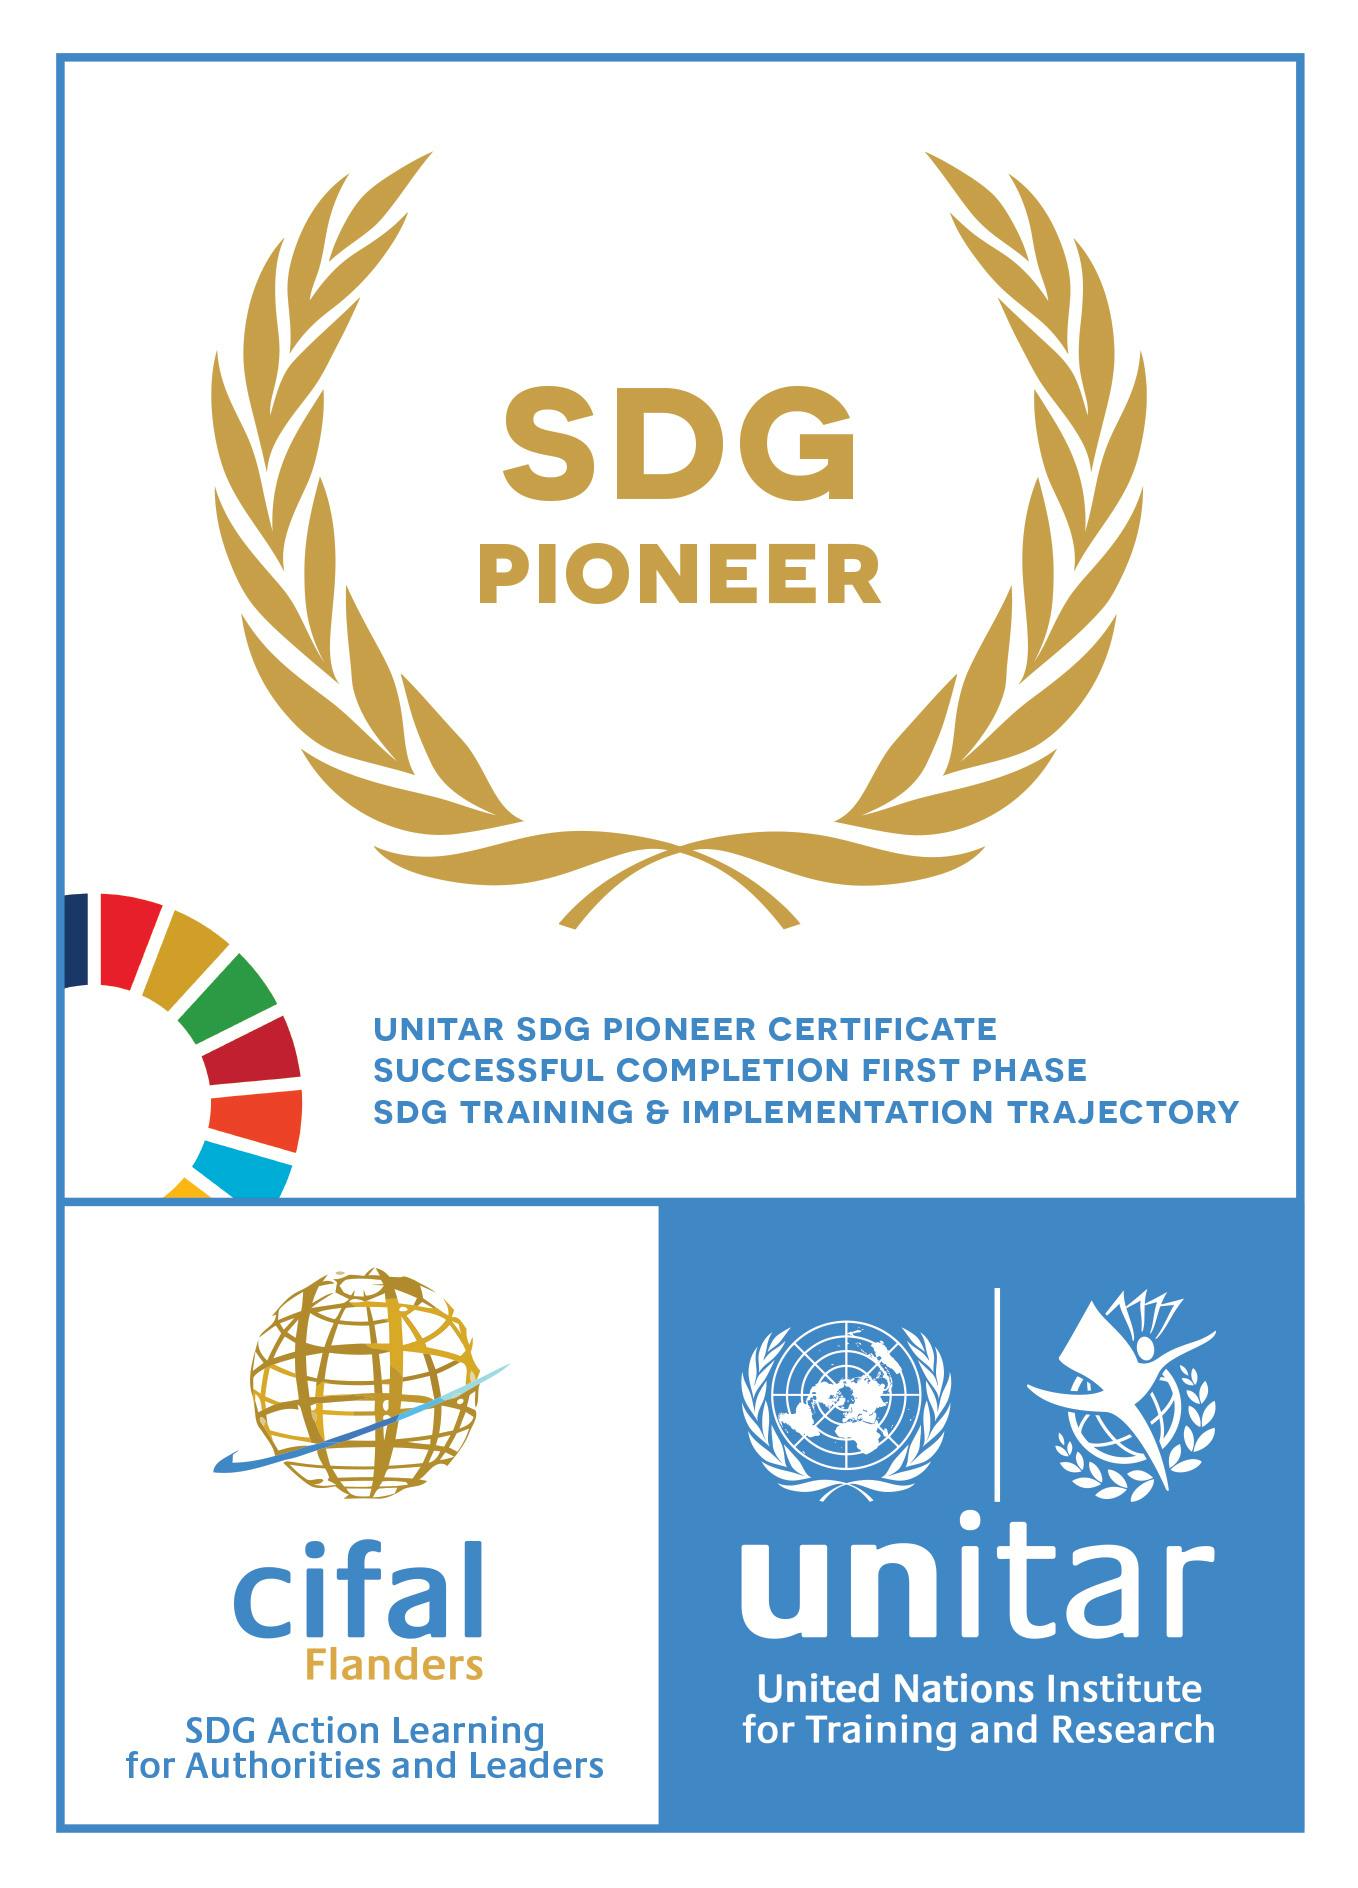 imec erkend als SDG Pioneer